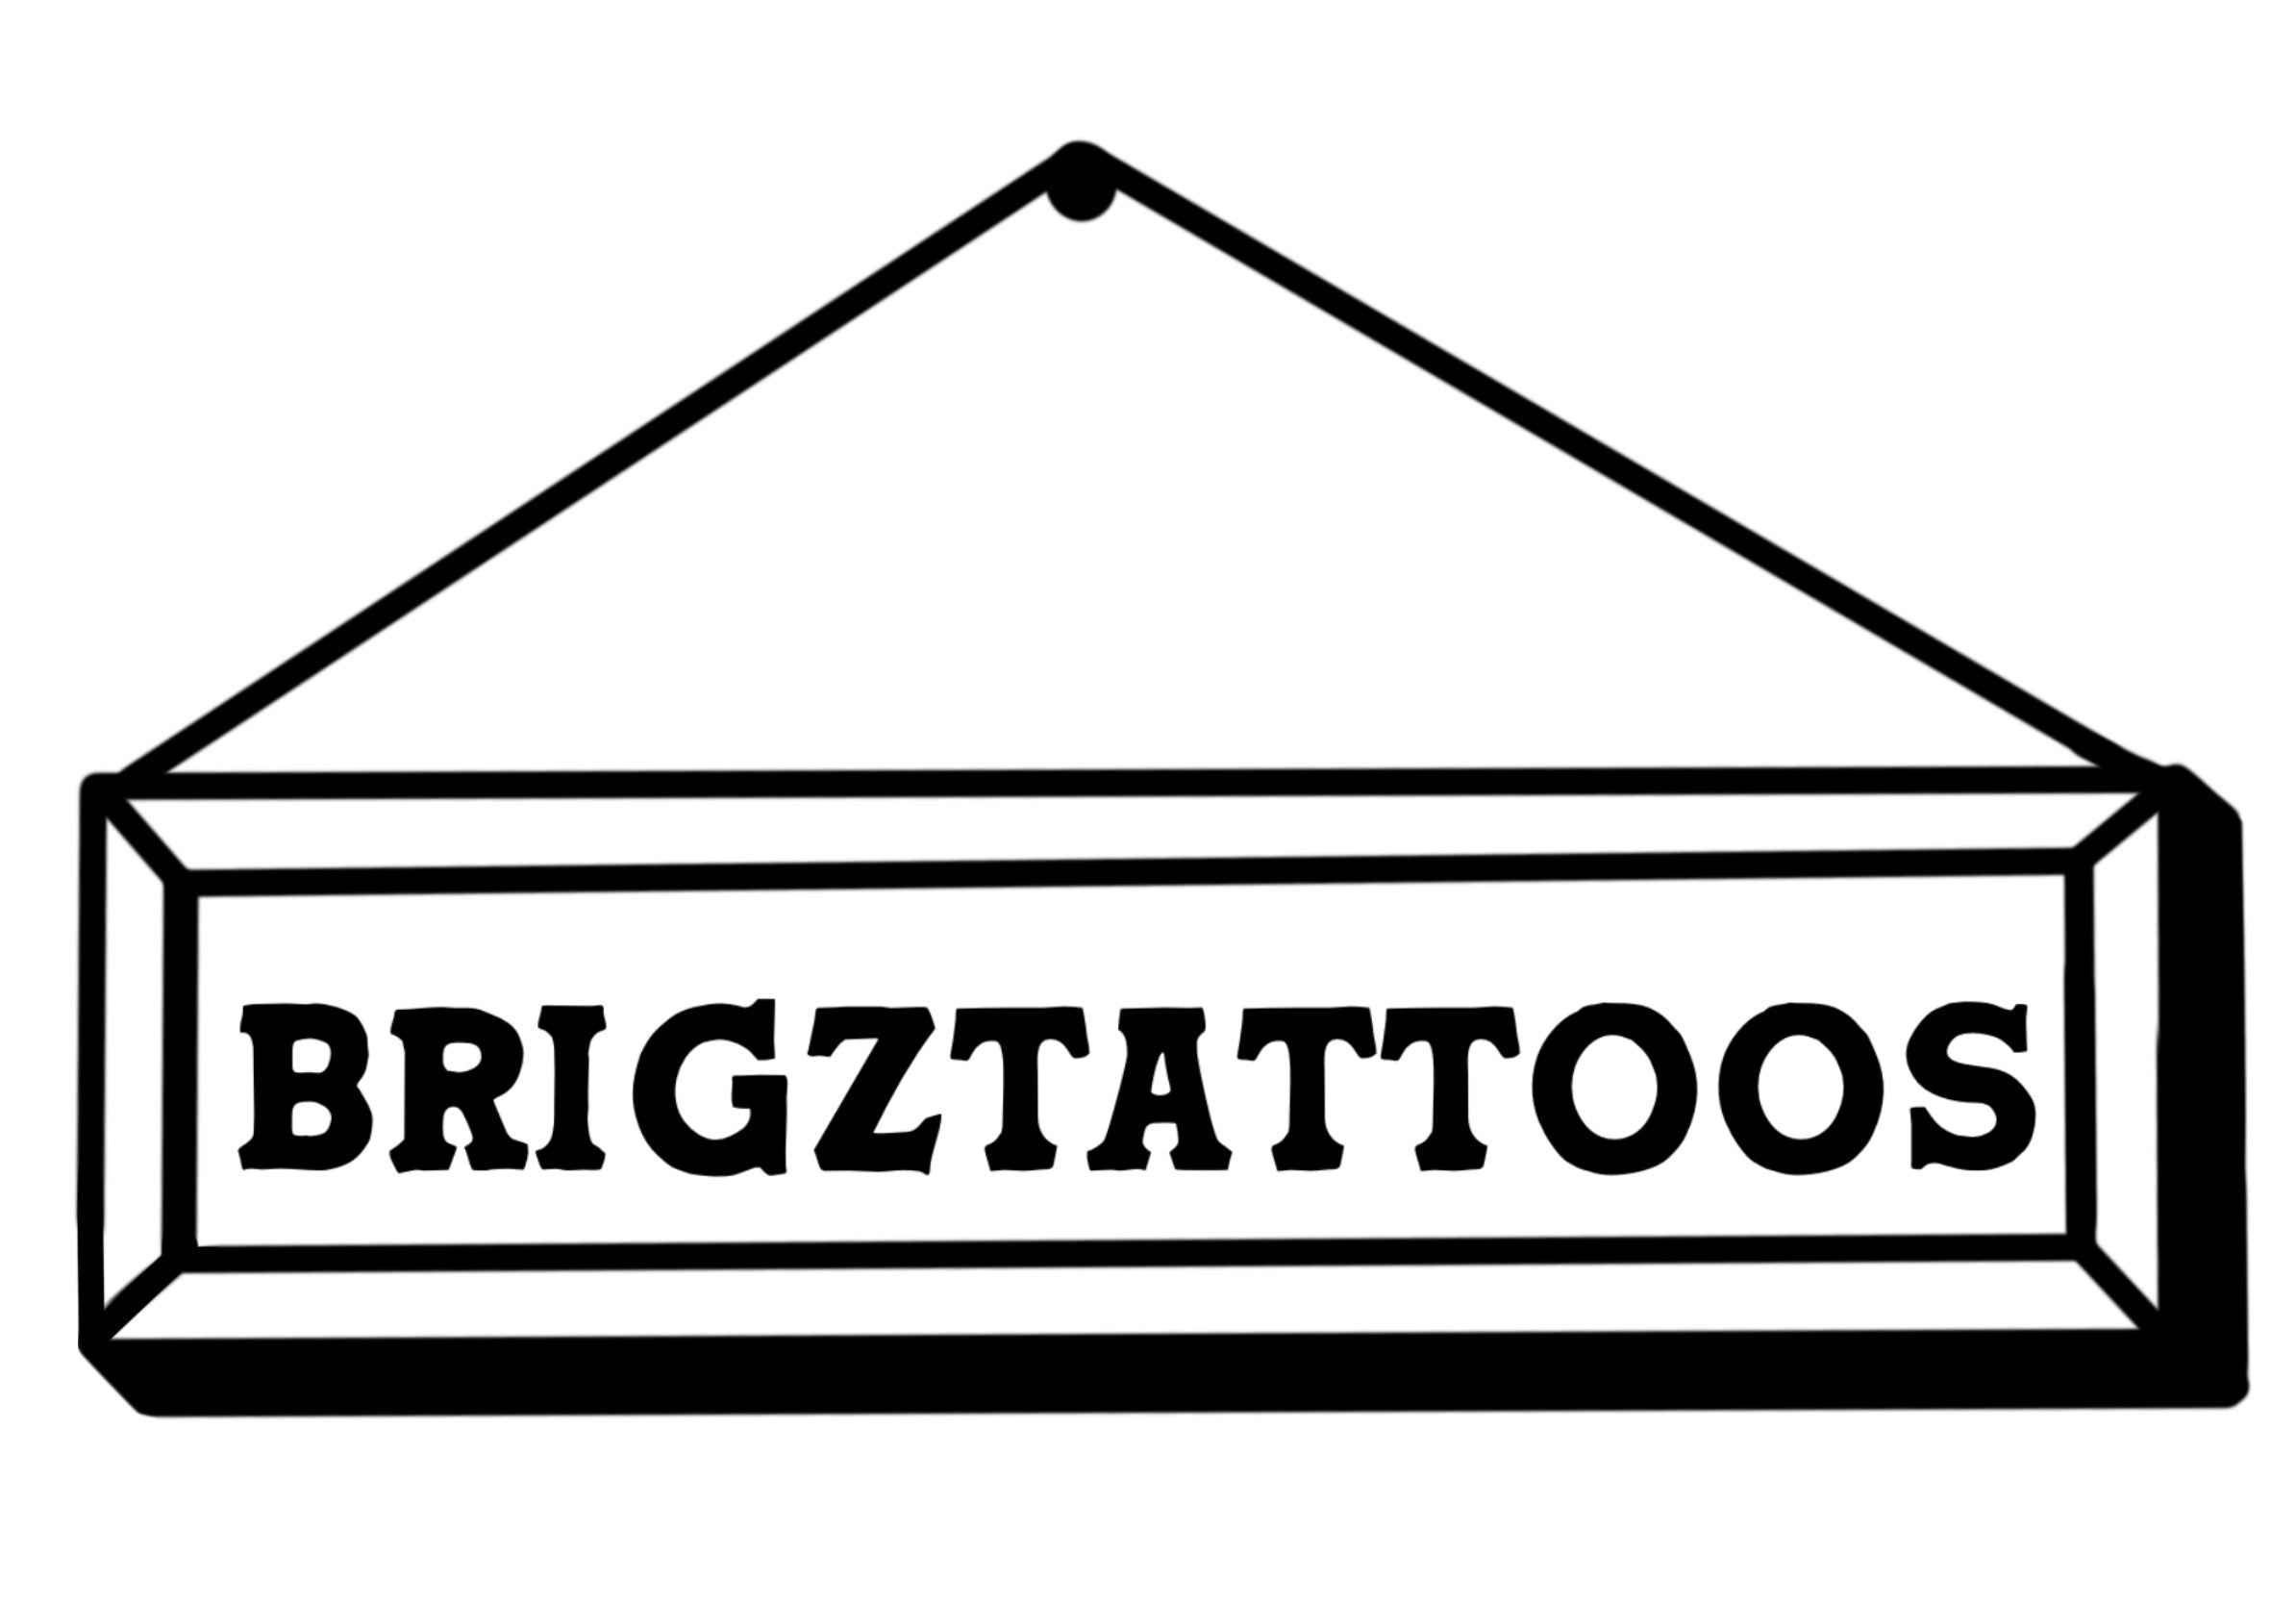 All Tattoo Designs – Page 5 – Brigz Tattoos